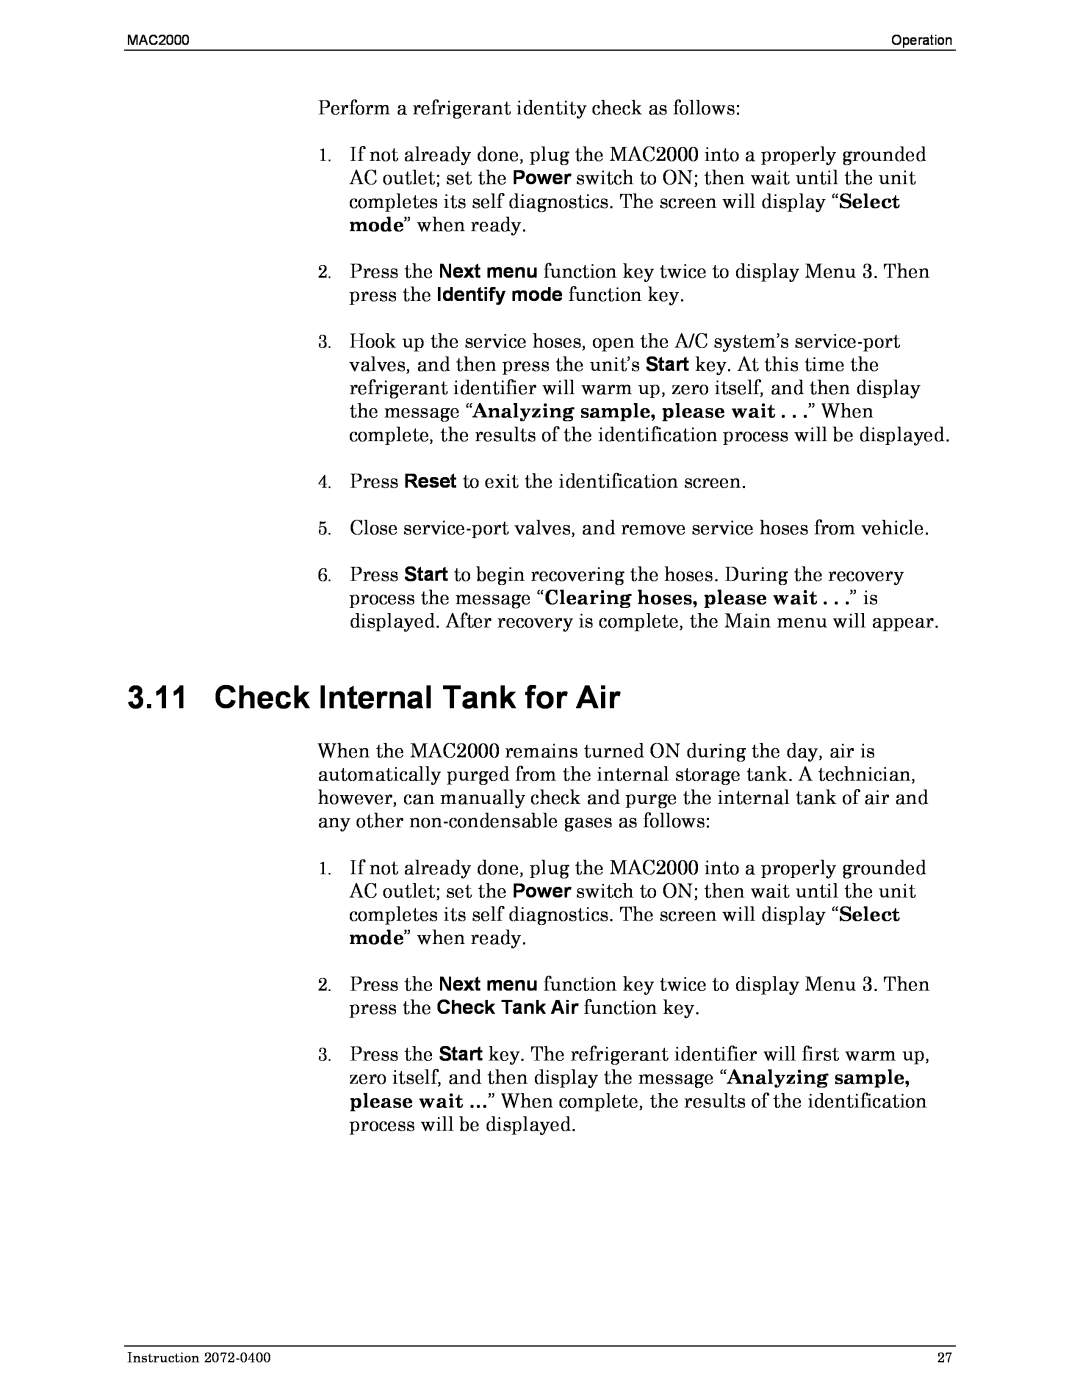 Bacharach 2072-0400 manual 3.11Check Internal Tank for Air 